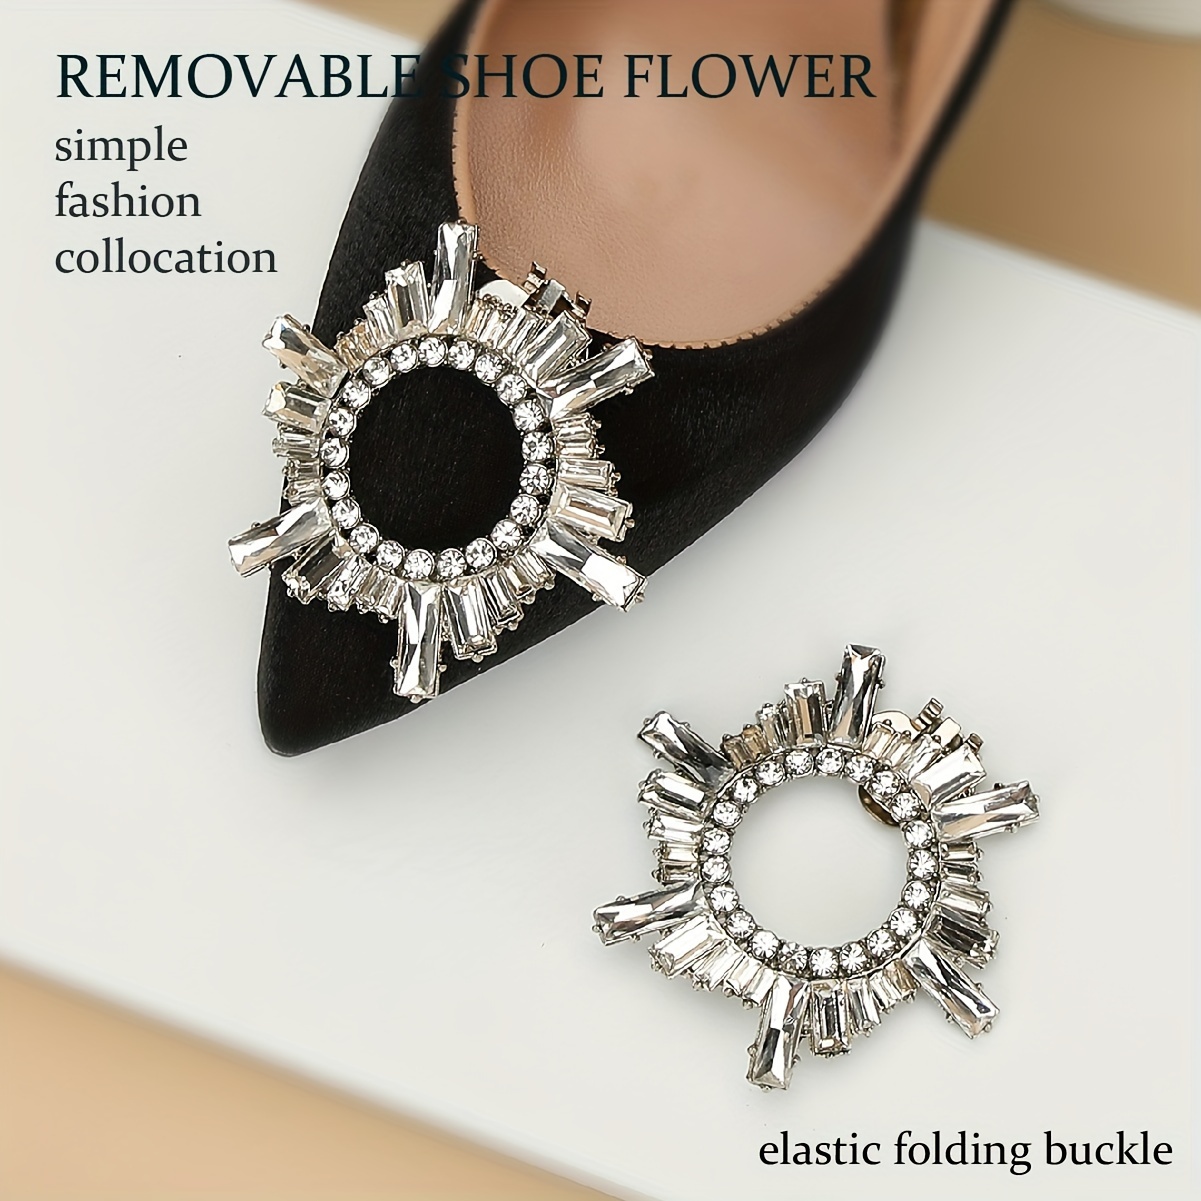 2Pcs Elegant Rhinestone Shoe Clips Shoes Jewelry Decoration